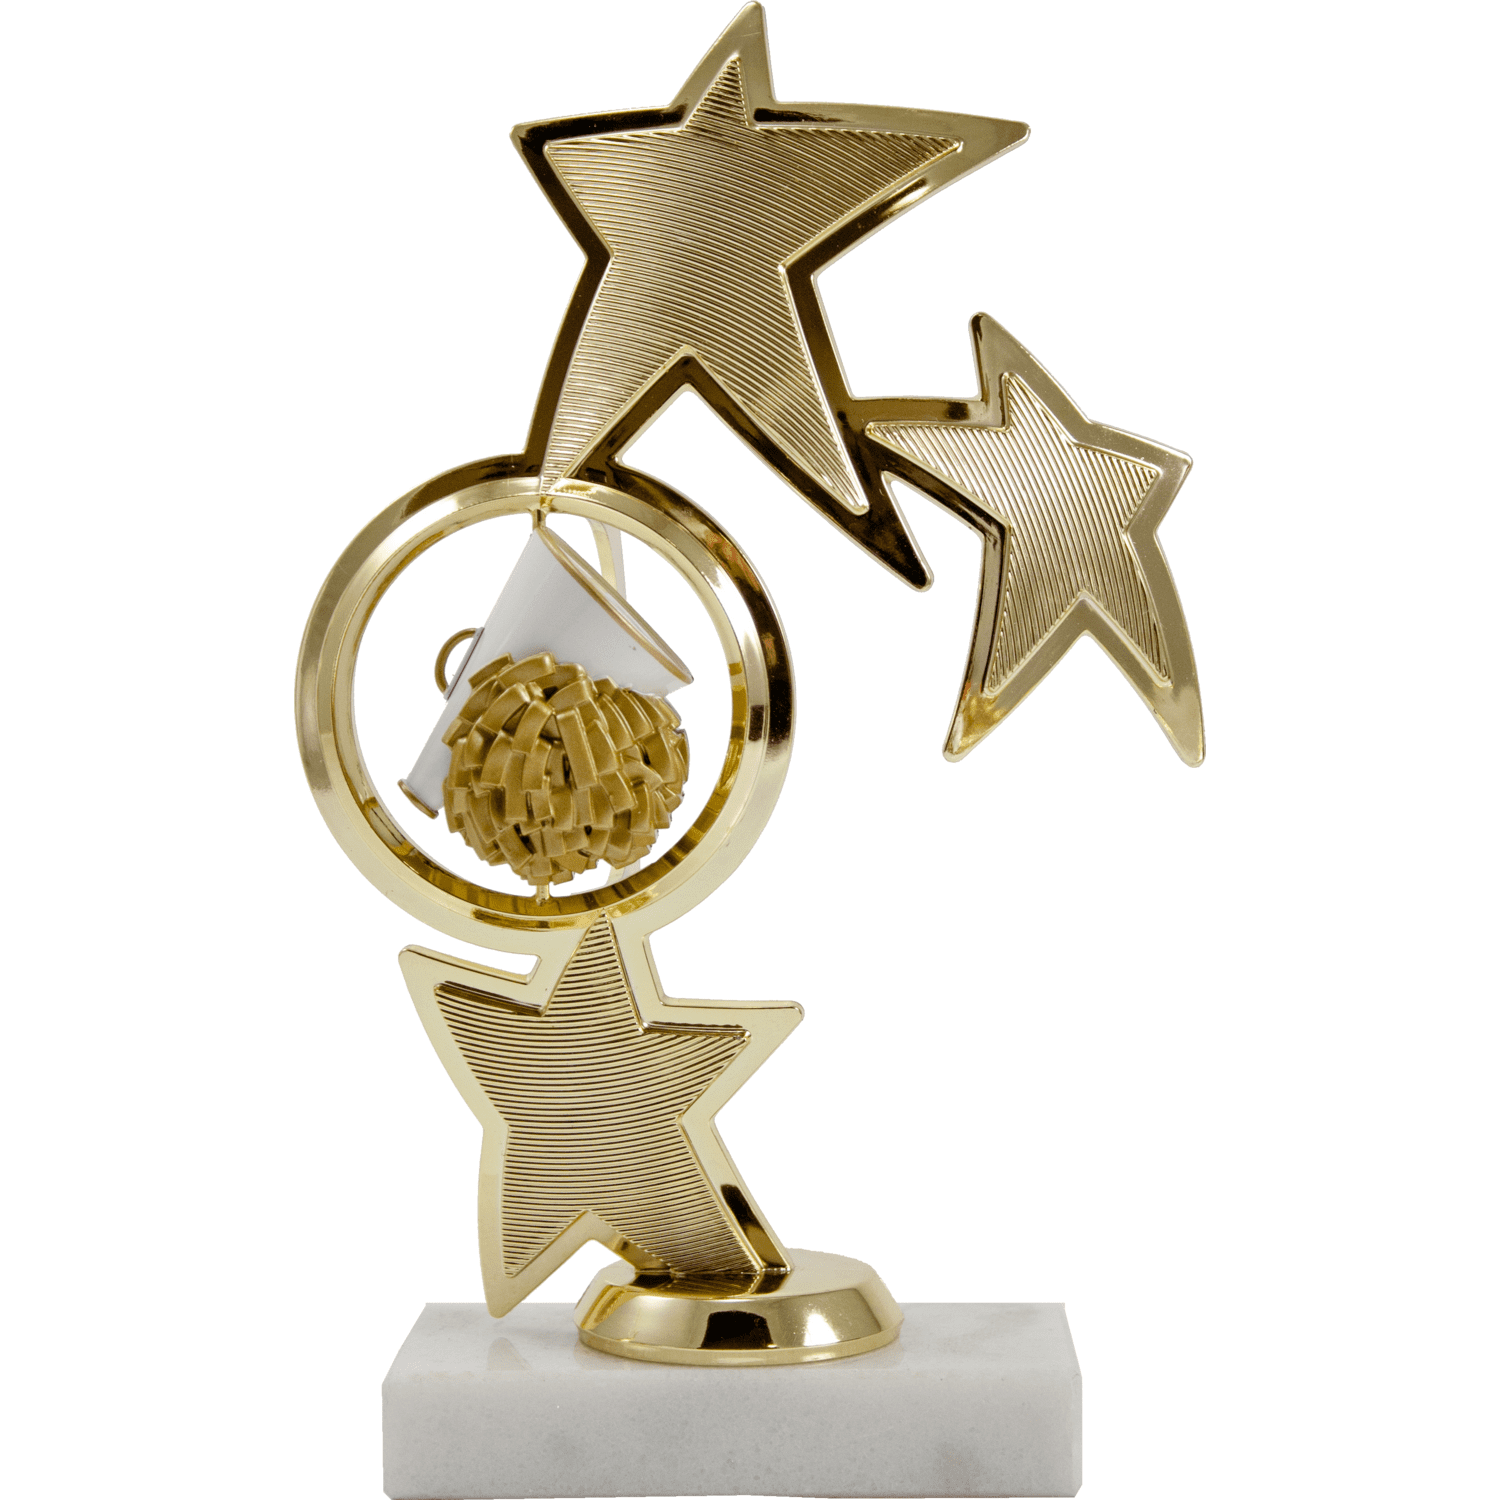 Sport Ball Stars Spinner | Alliance Awards LLC.